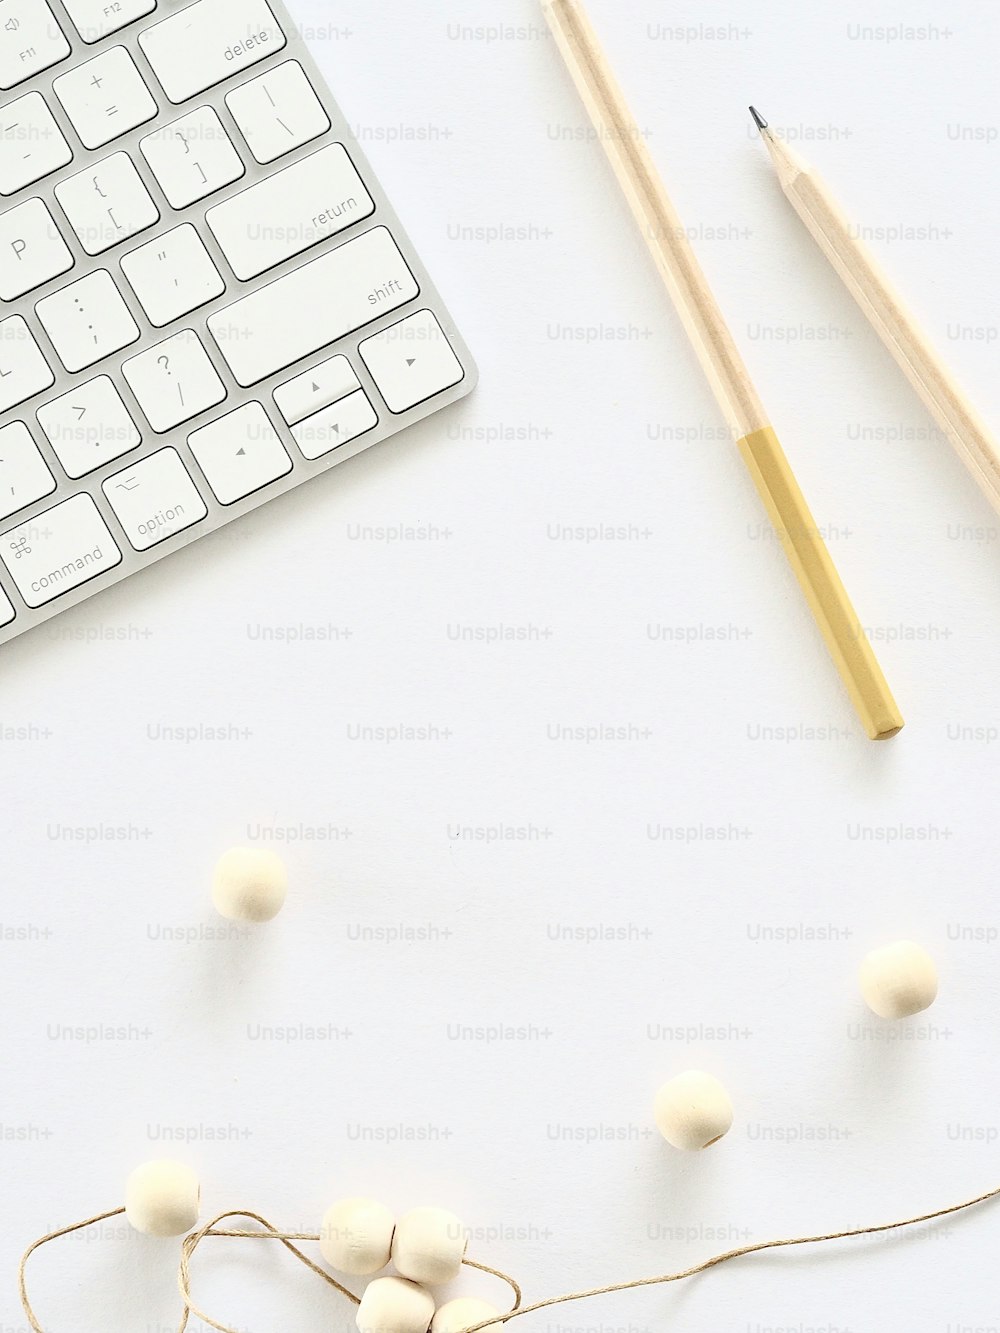 um teclado, lápis e bolas de fio em uma superfície branca